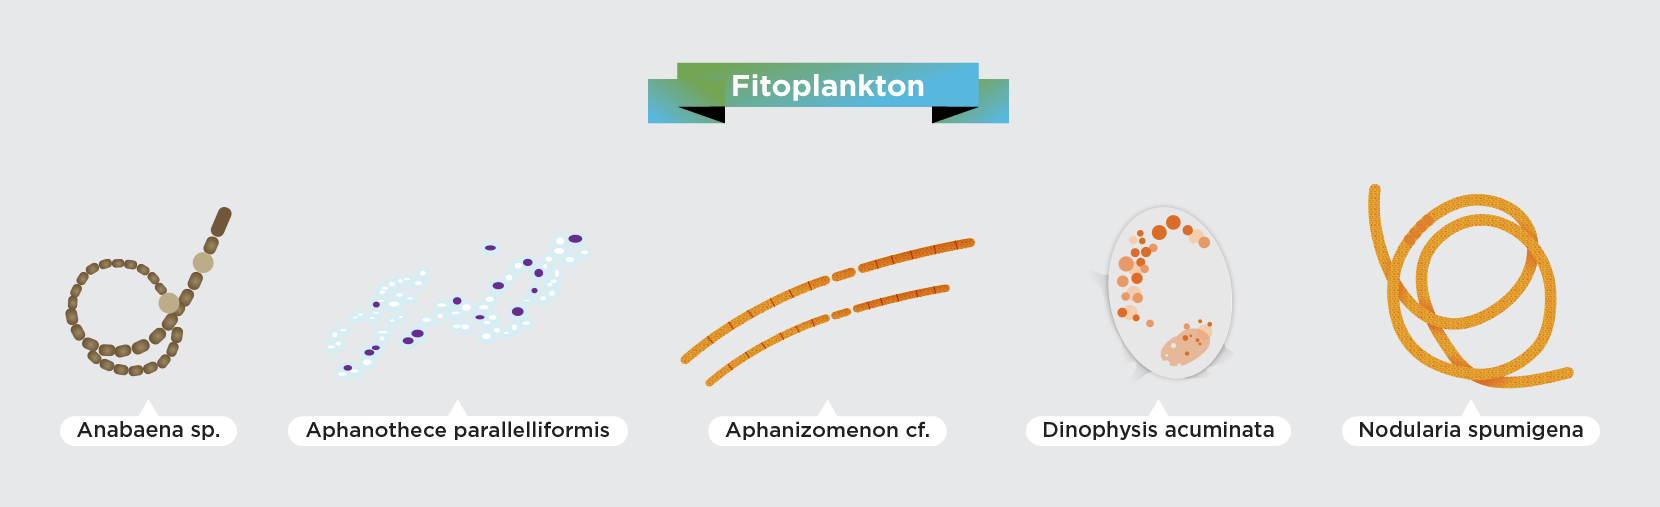 Fitoplankton - czyli organizmy roślinne w Bałtyku